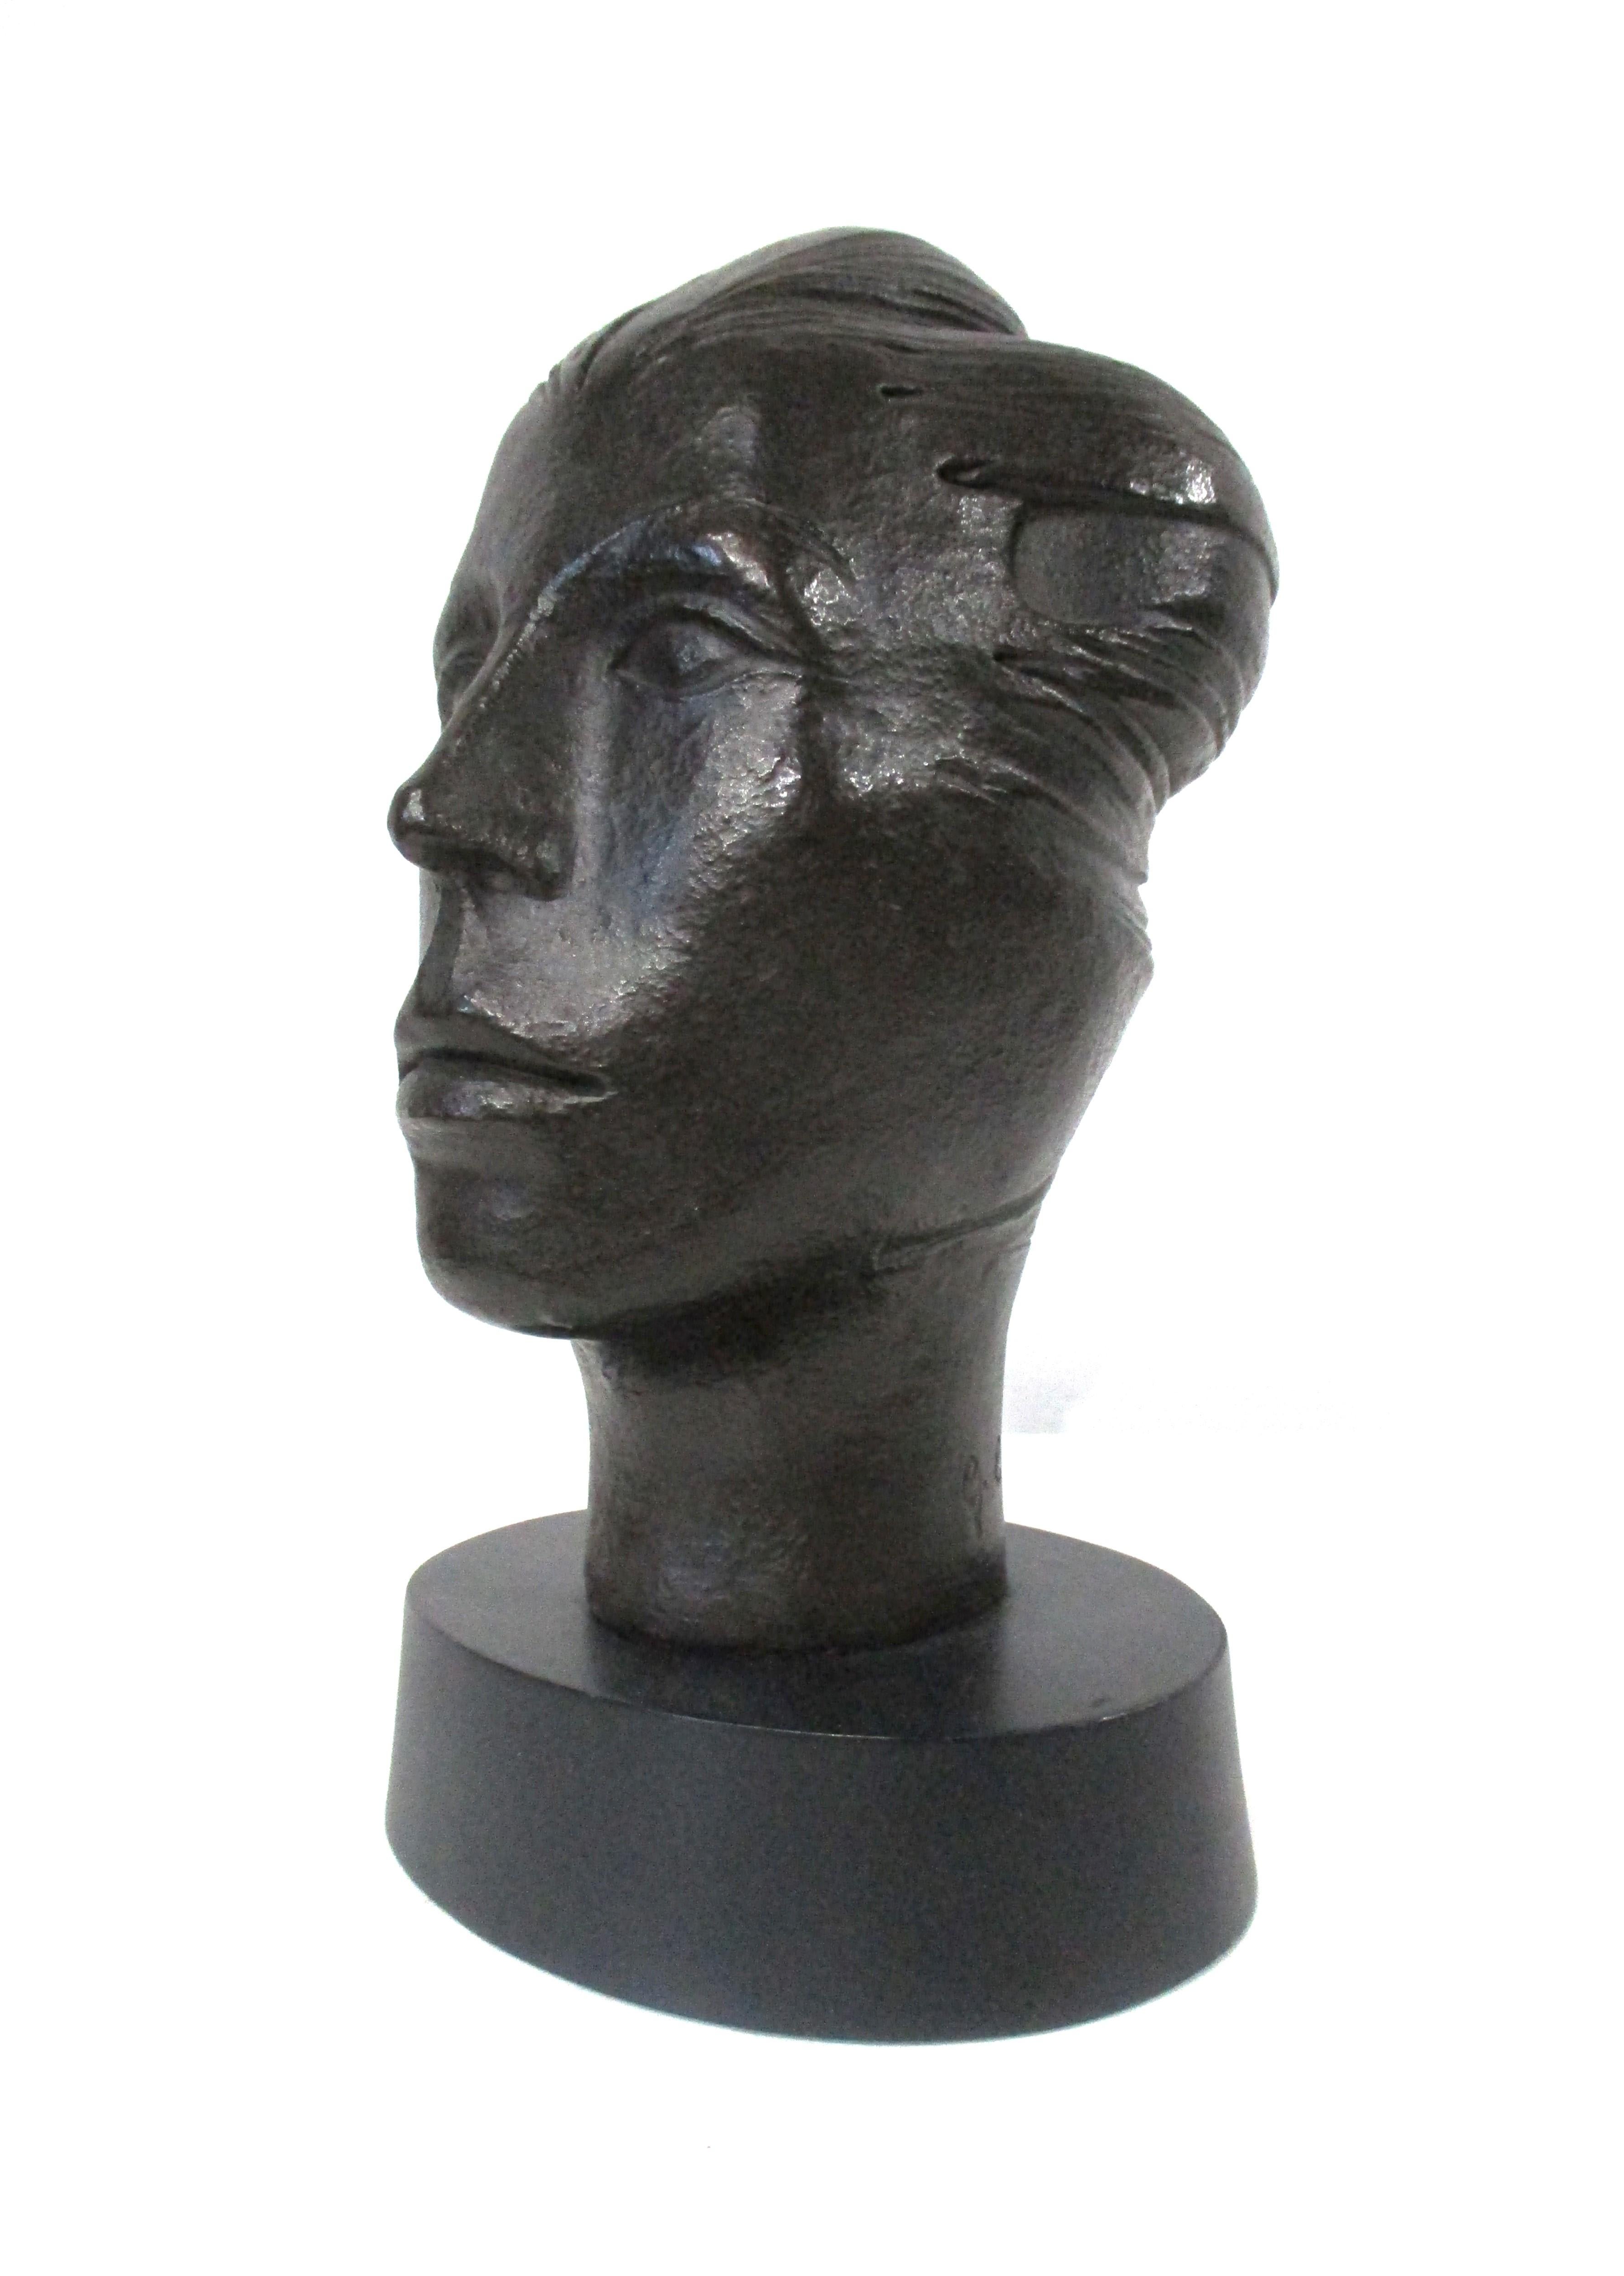 Sculpture d'une tête de femme forte en bronze foncé avec une base ovale noire satinée. Ce buste en composite moulé présente de superbes détails avec une sensation de liberté et de confiance balayée par le vent. Il est signé et numéroté par l'artiste